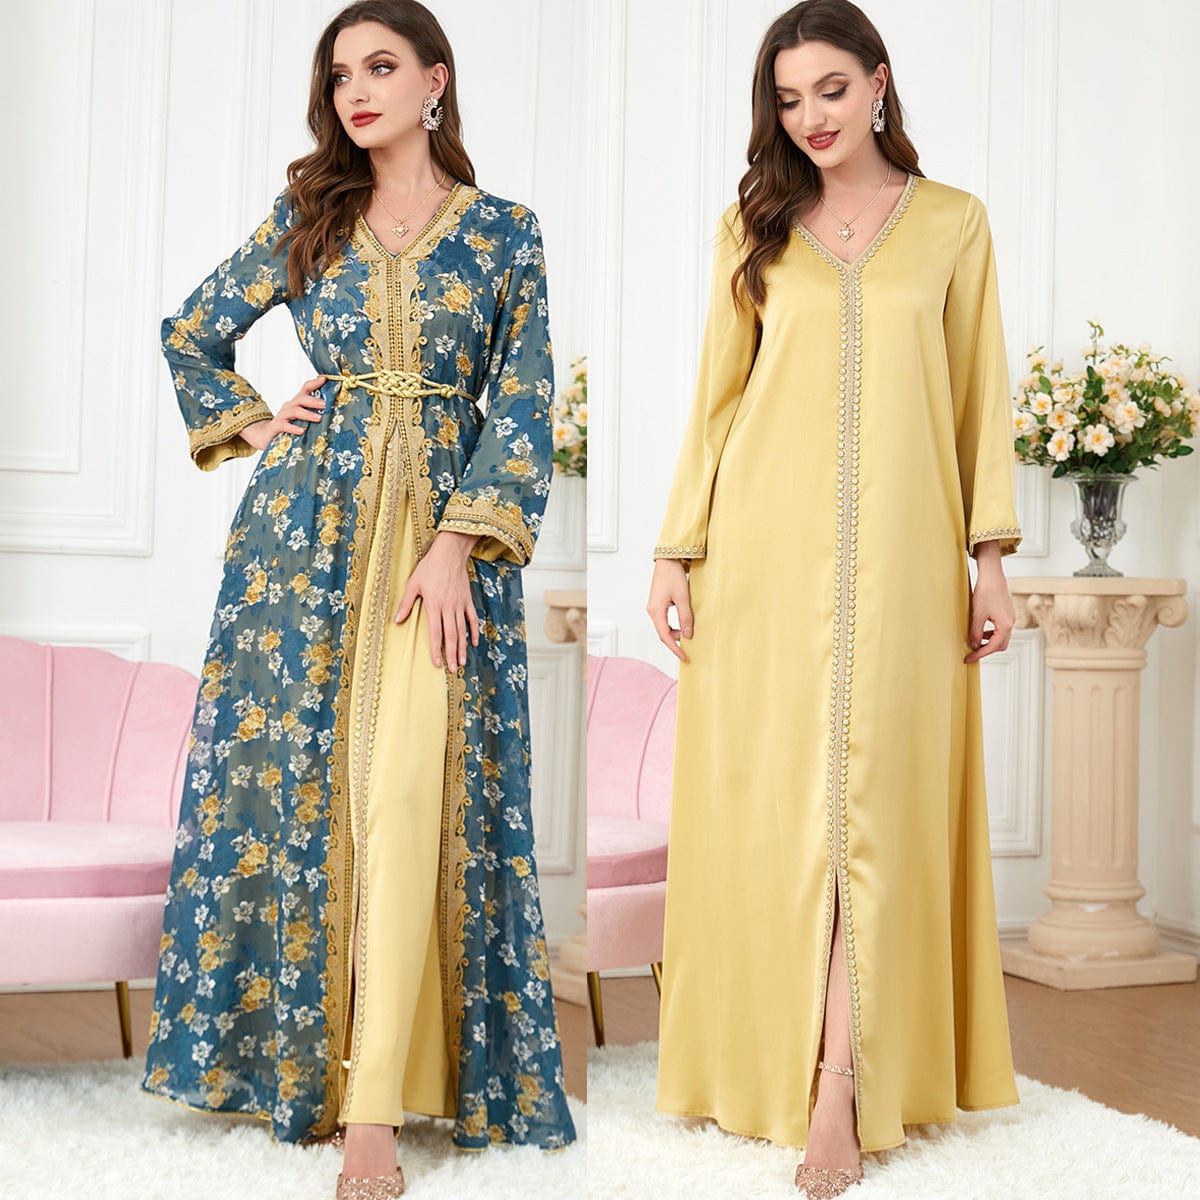 BROOCHITON abbaya ramada Women's Muslim Clothing Set Fashion Robe